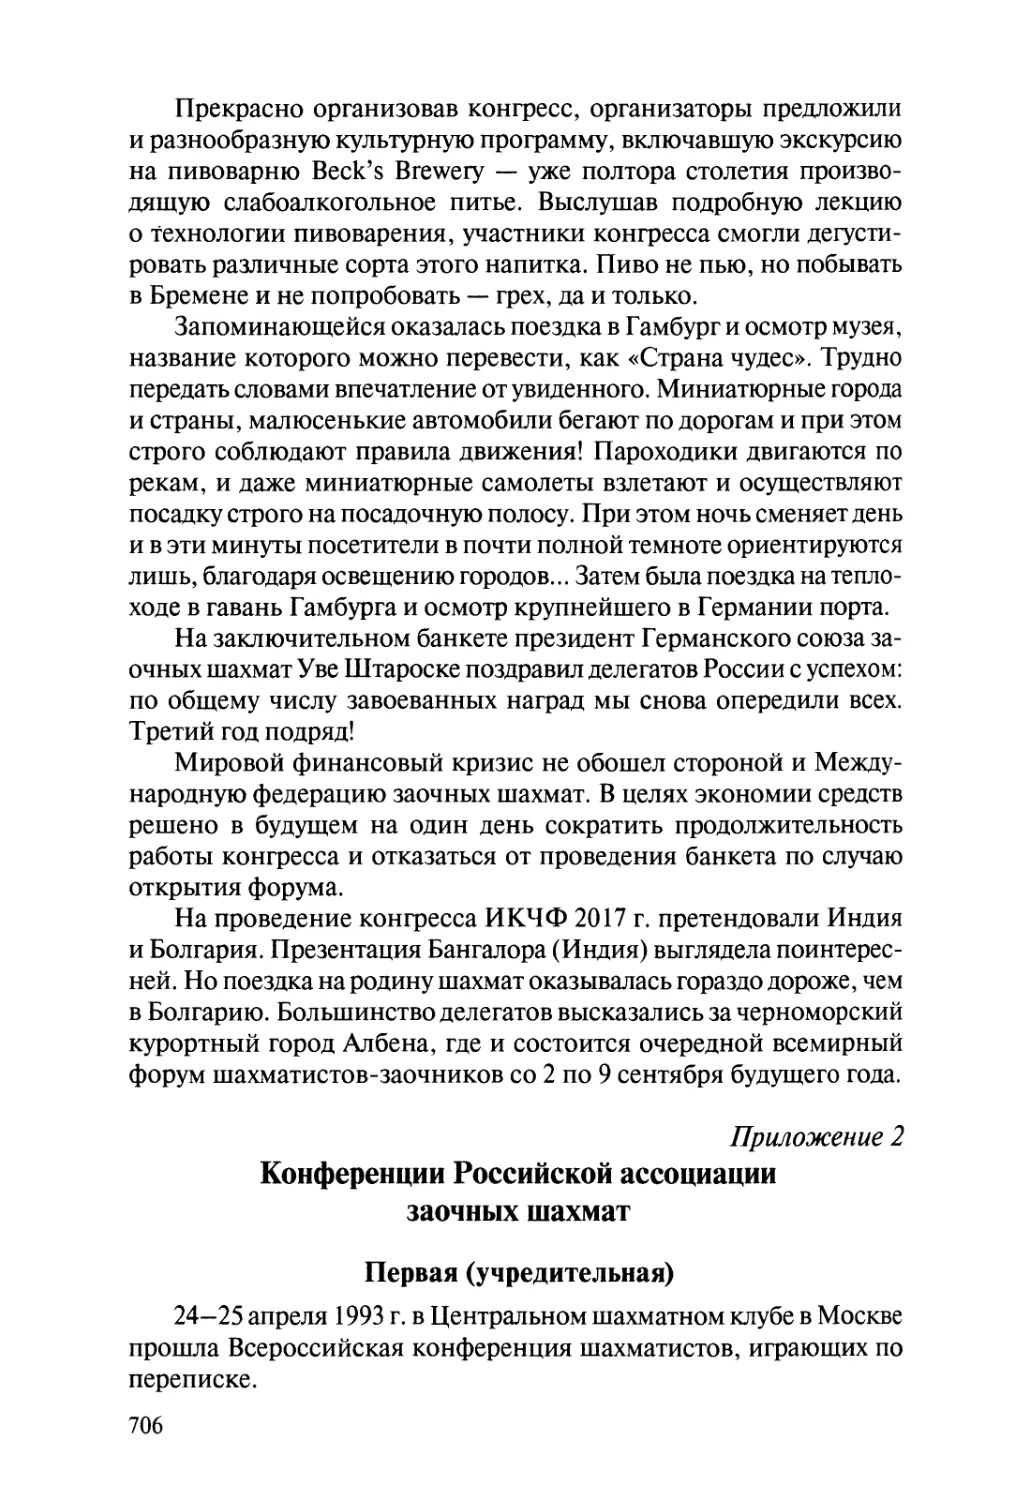 Приложение 2. Конференции Российской ассоциации заочных шахмат